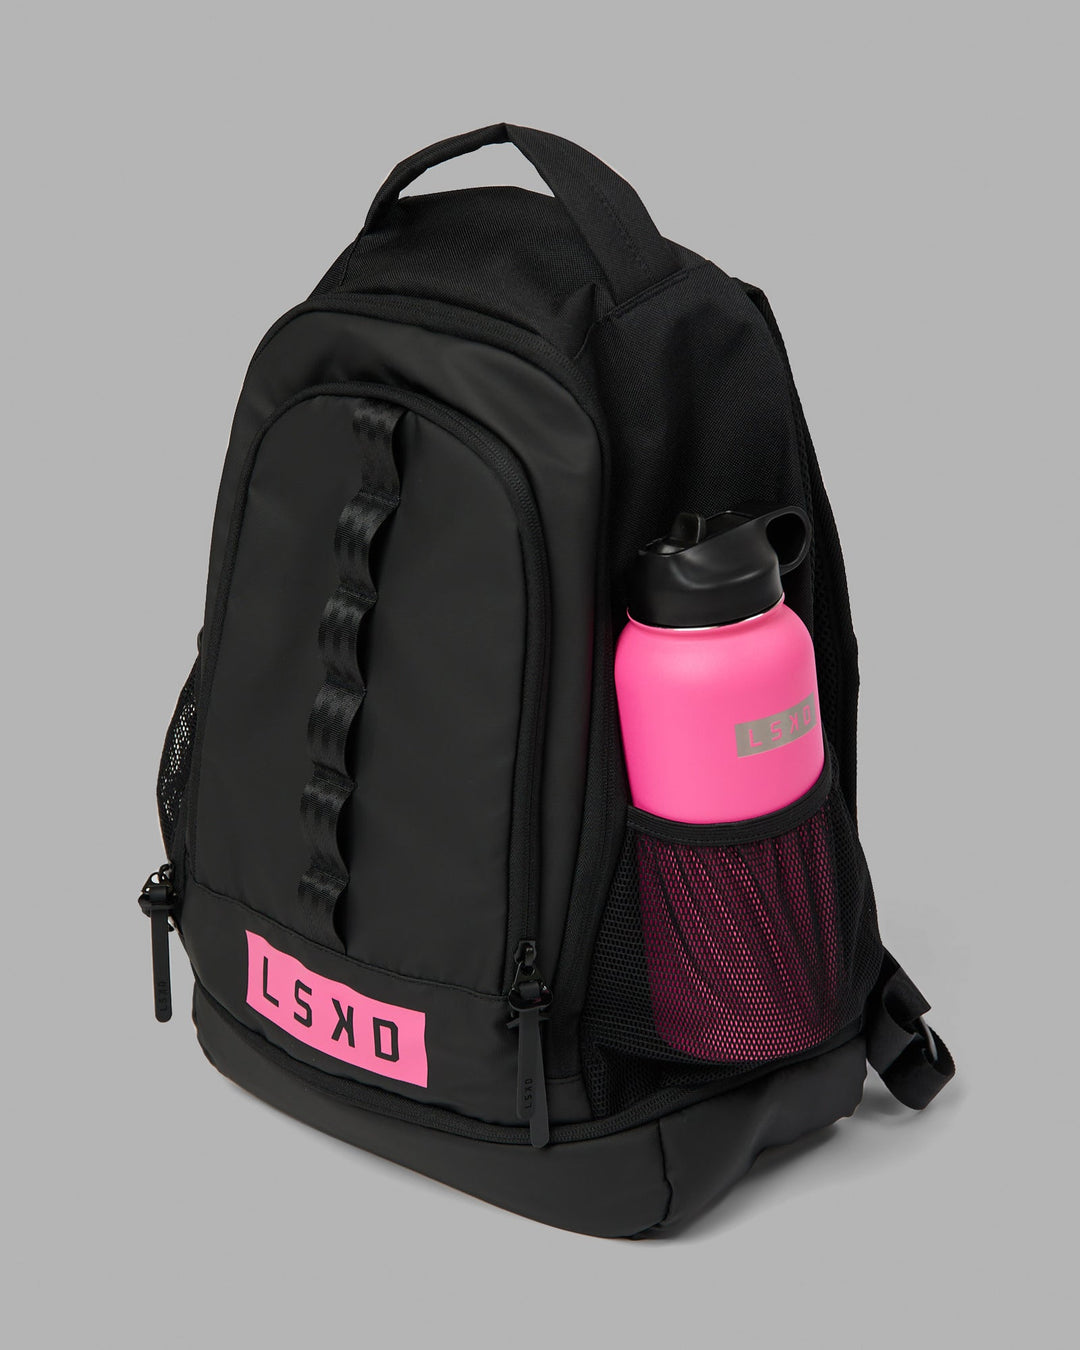 Rep Backpack - Black - Flamingo